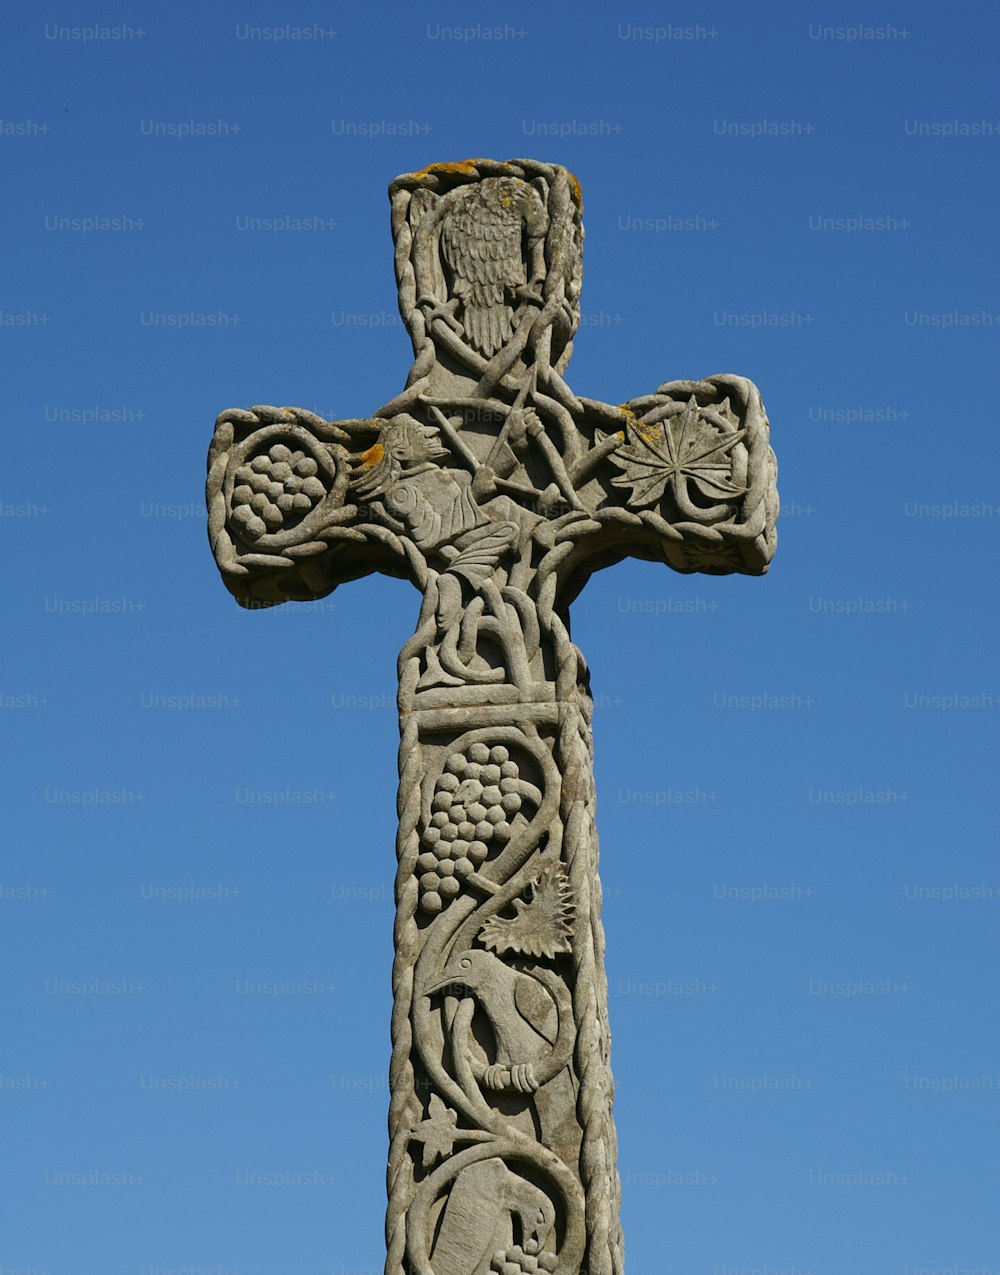 una croce di pietra con incisioni su di essa contro un cielo blu